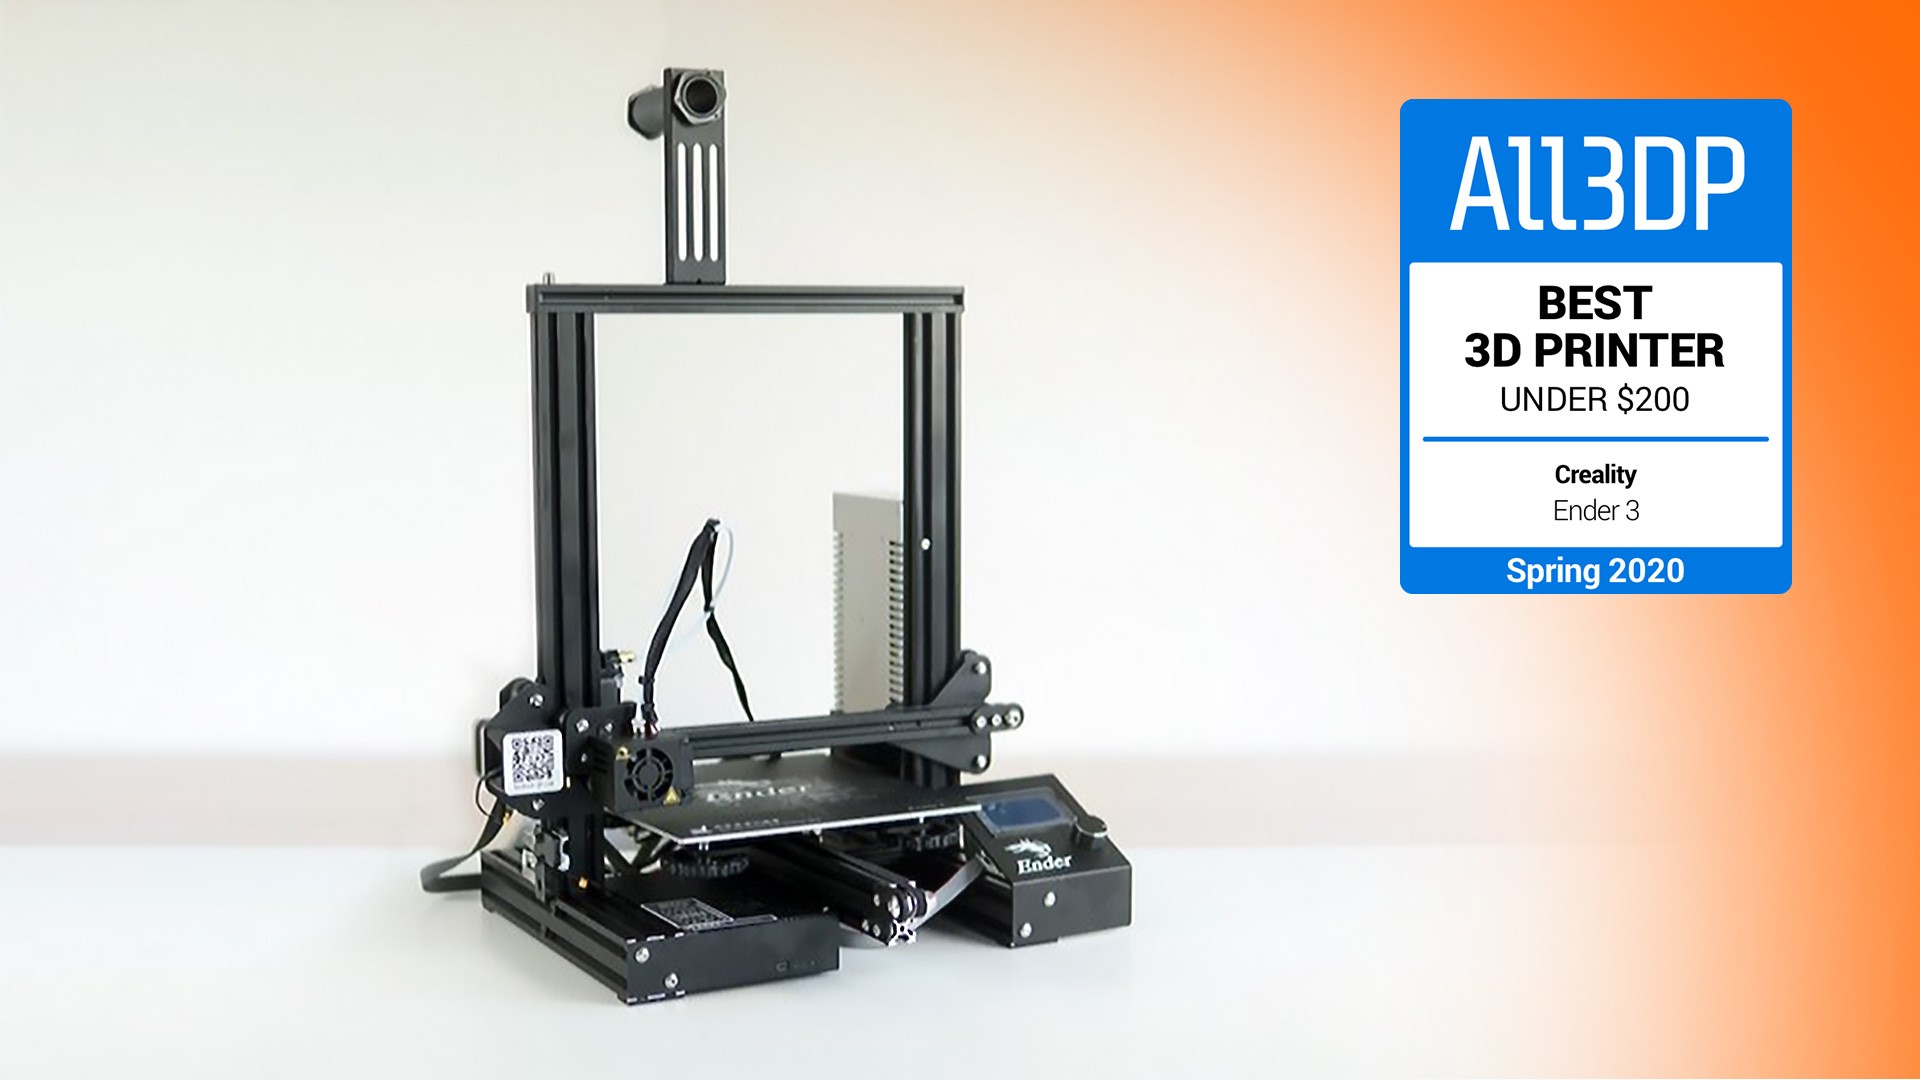 impresoras y scanners - ComgrowCreality Ender 3 Impresora 3D de aluminio con reanudación de impresión 0